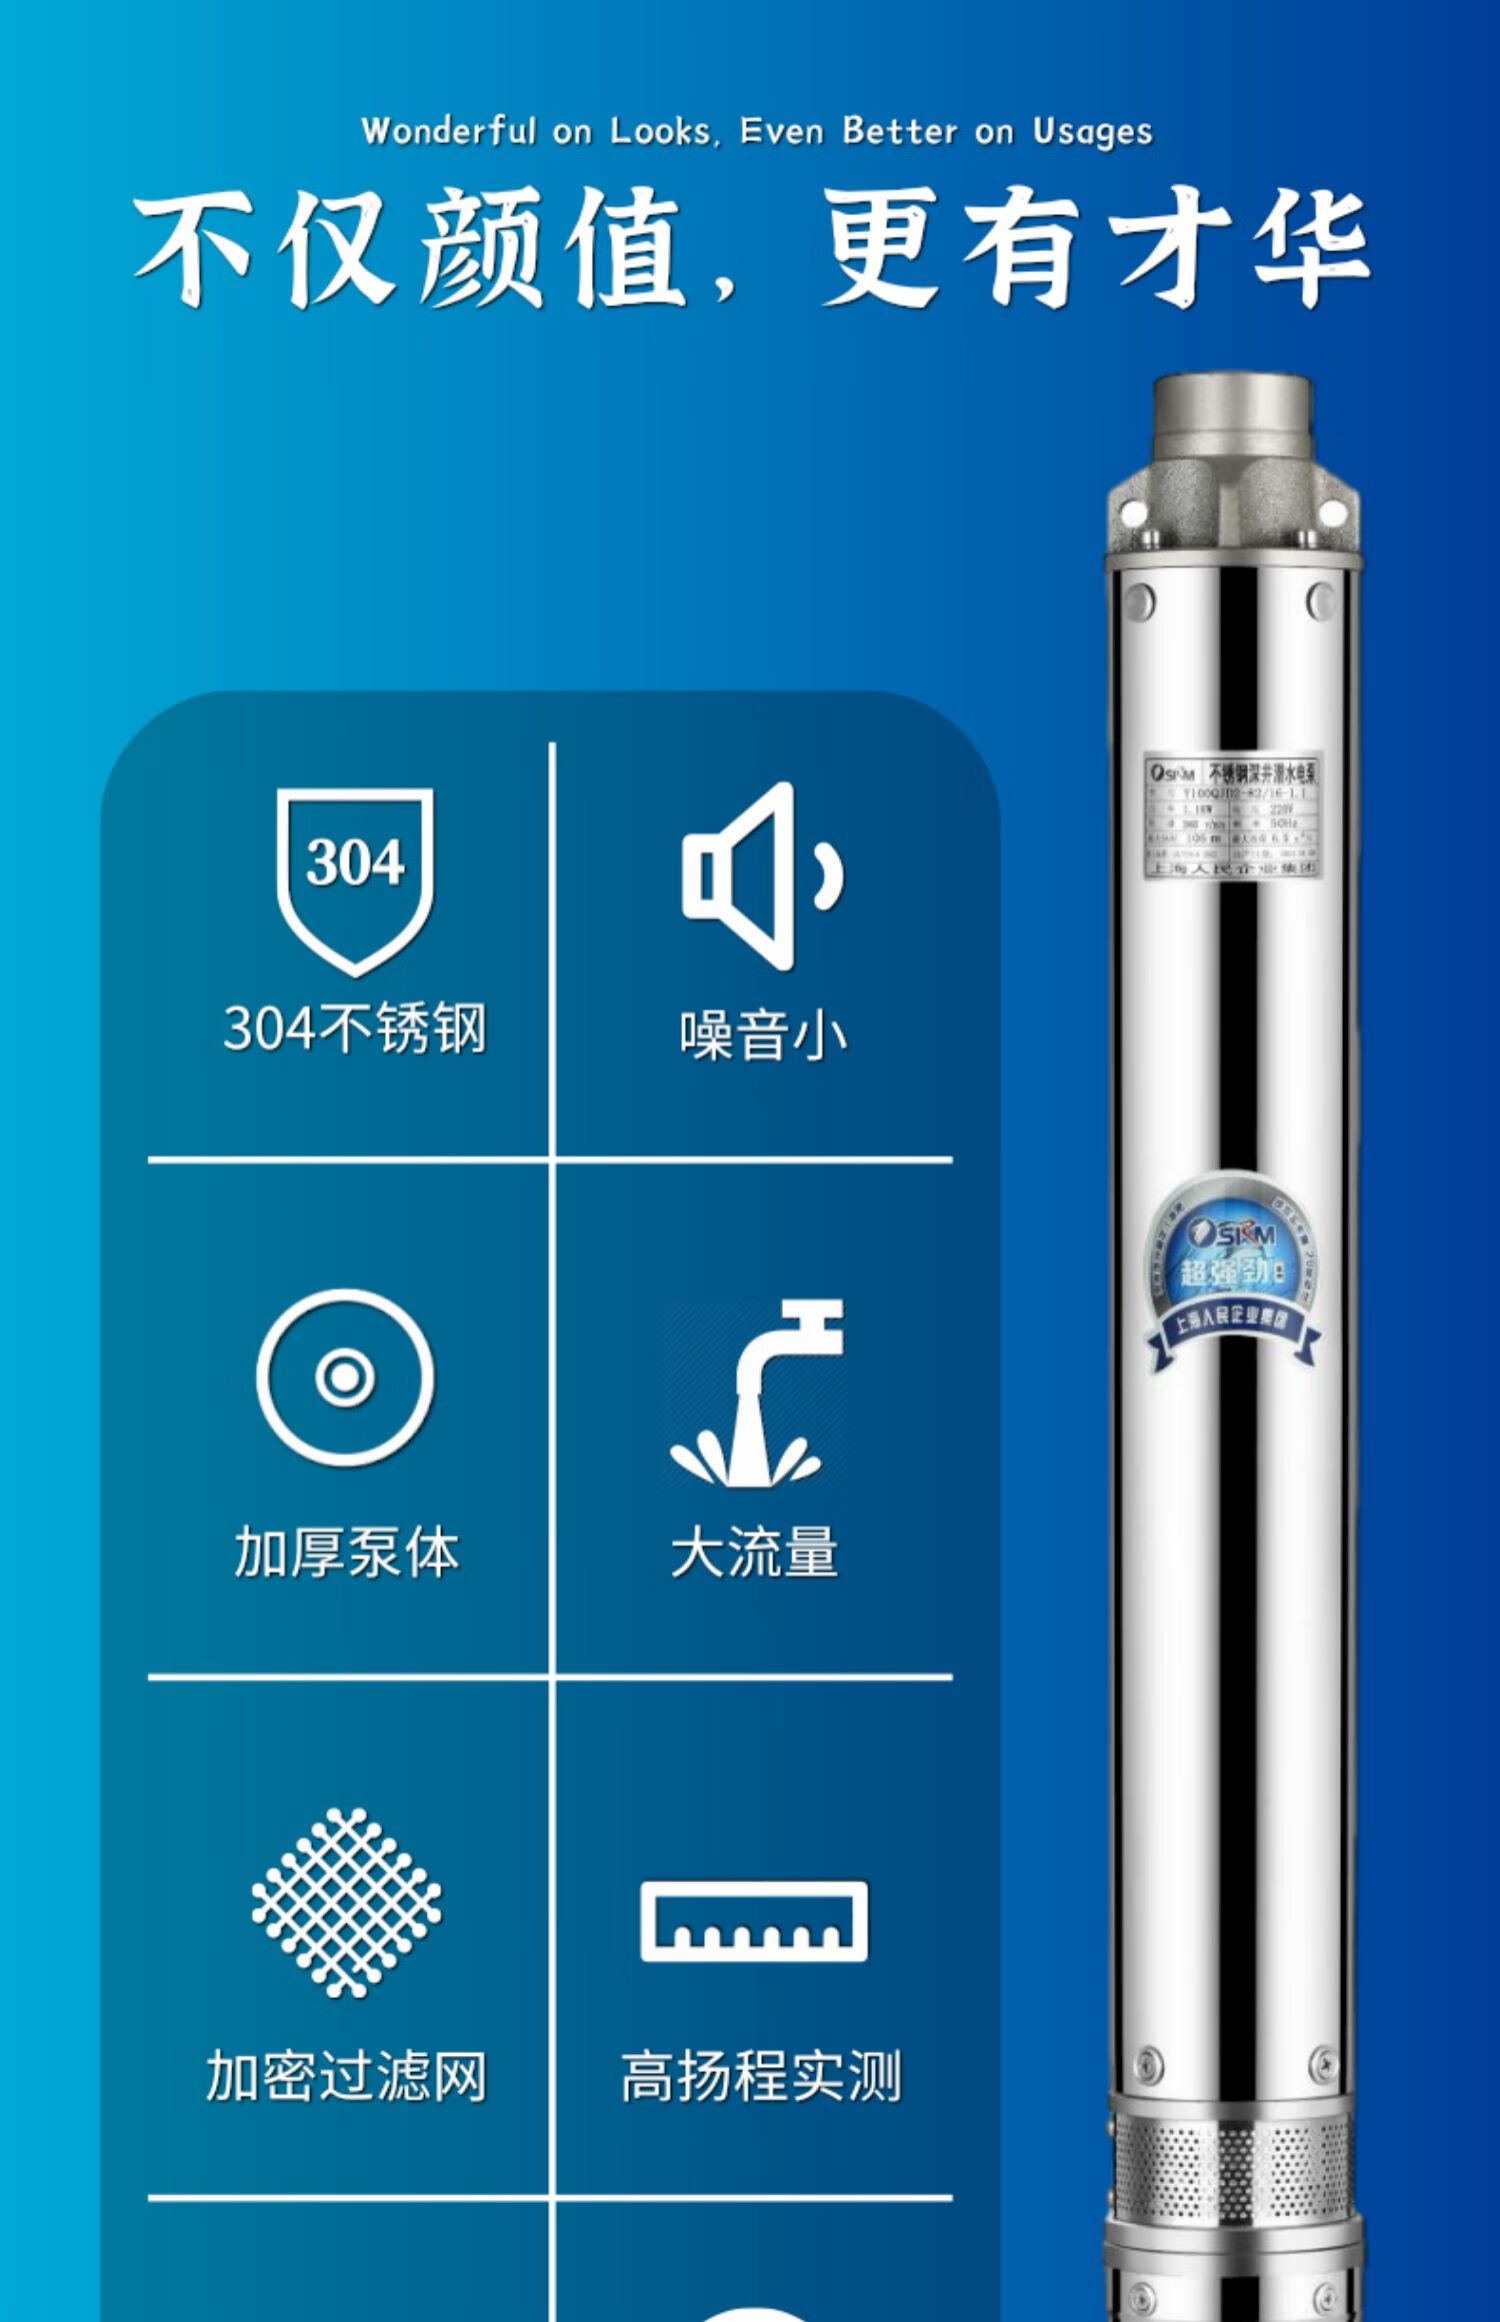 上海人民牌潜水泵规格图片